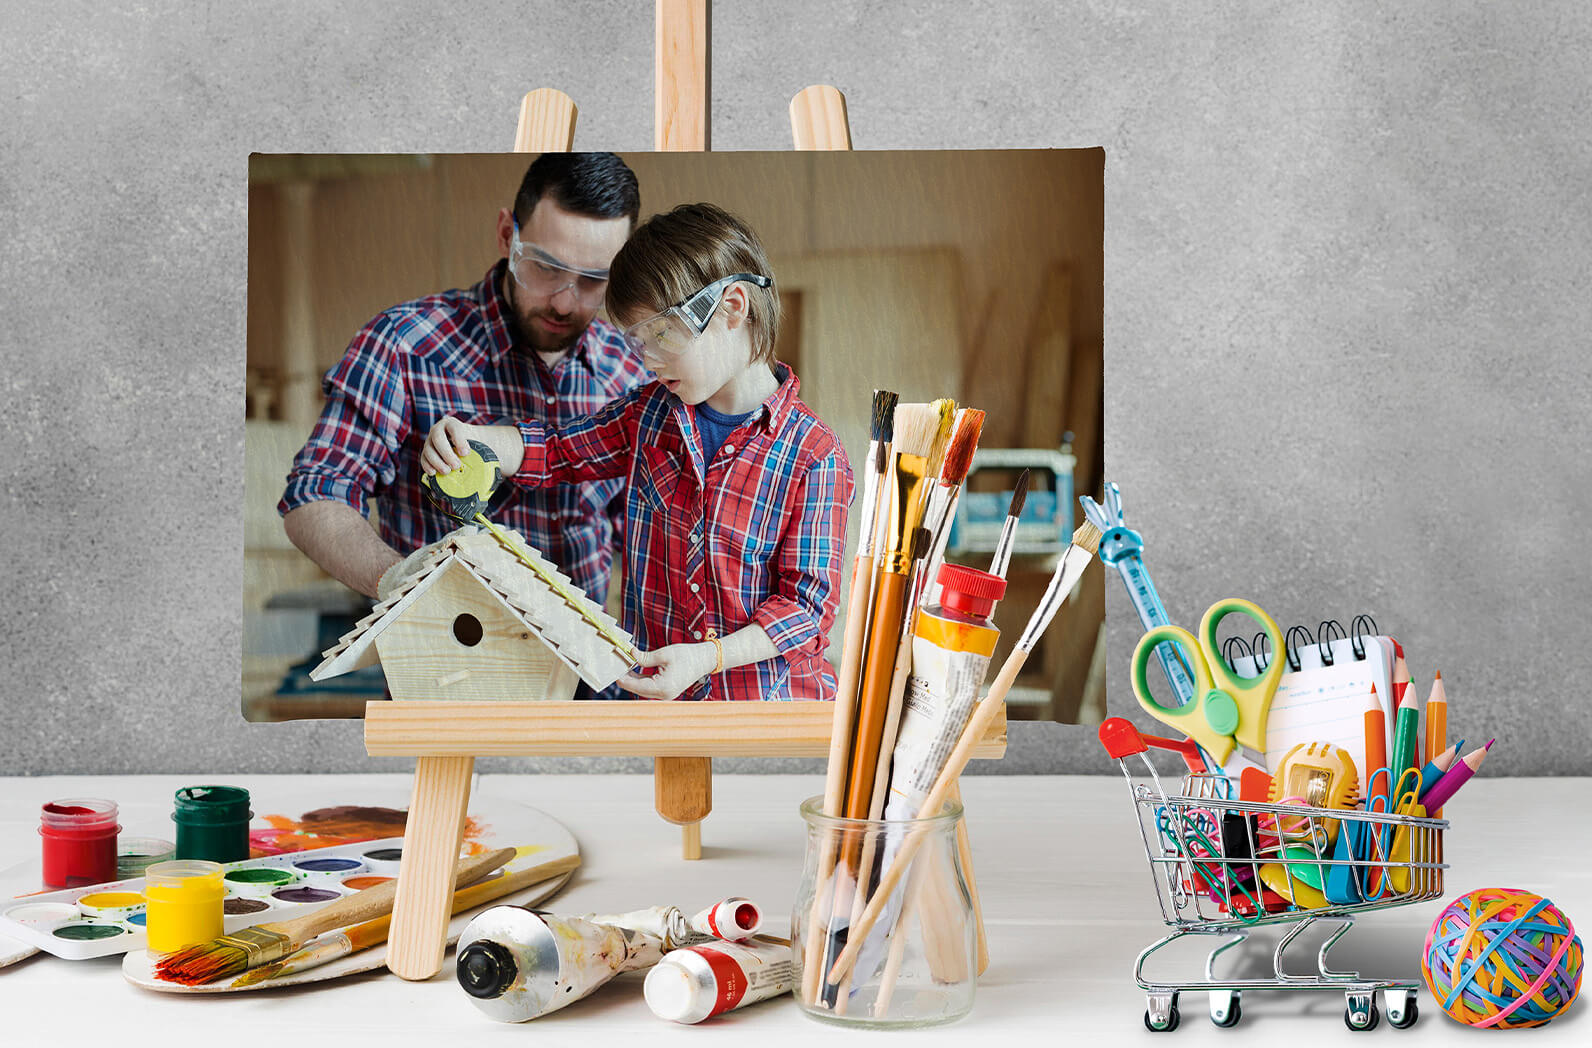  boyalar ve kalemlerin arkasında resim tuvalinin içinde Bir kuş evi yapmak için çalışan baba ve oğlunun resmi